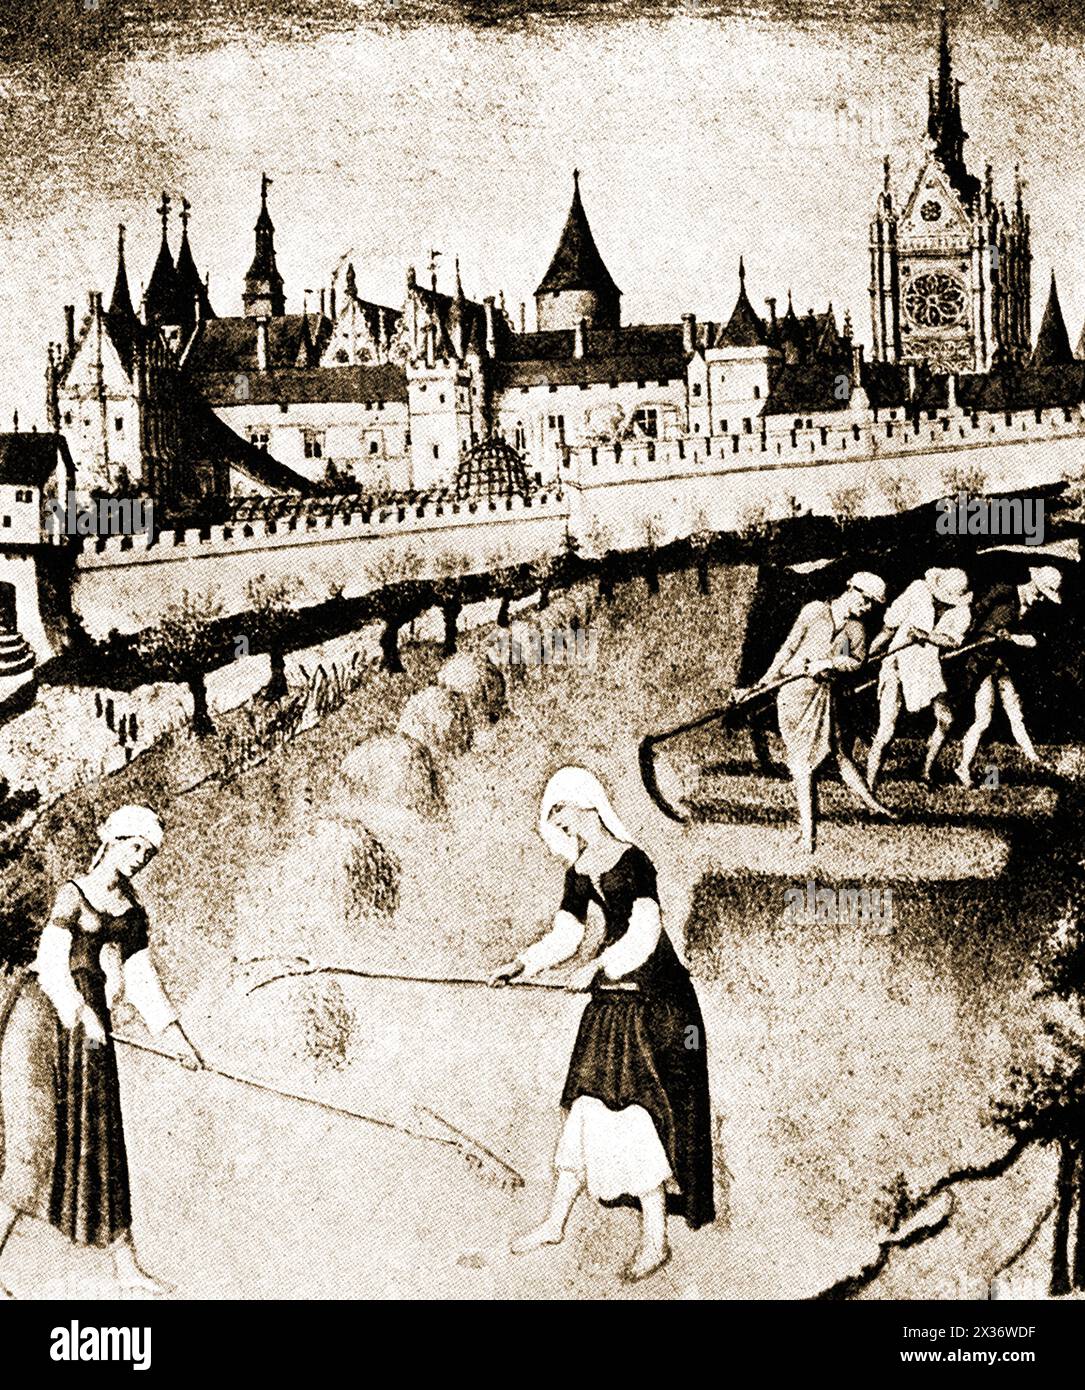 Ein Bild der Pointe de Cite aus dem 15. Jahrhundert, Paris, Frankreich - Image du XVe siècle de la Pointe de Cite, Paris, Frankreich Stockfoto